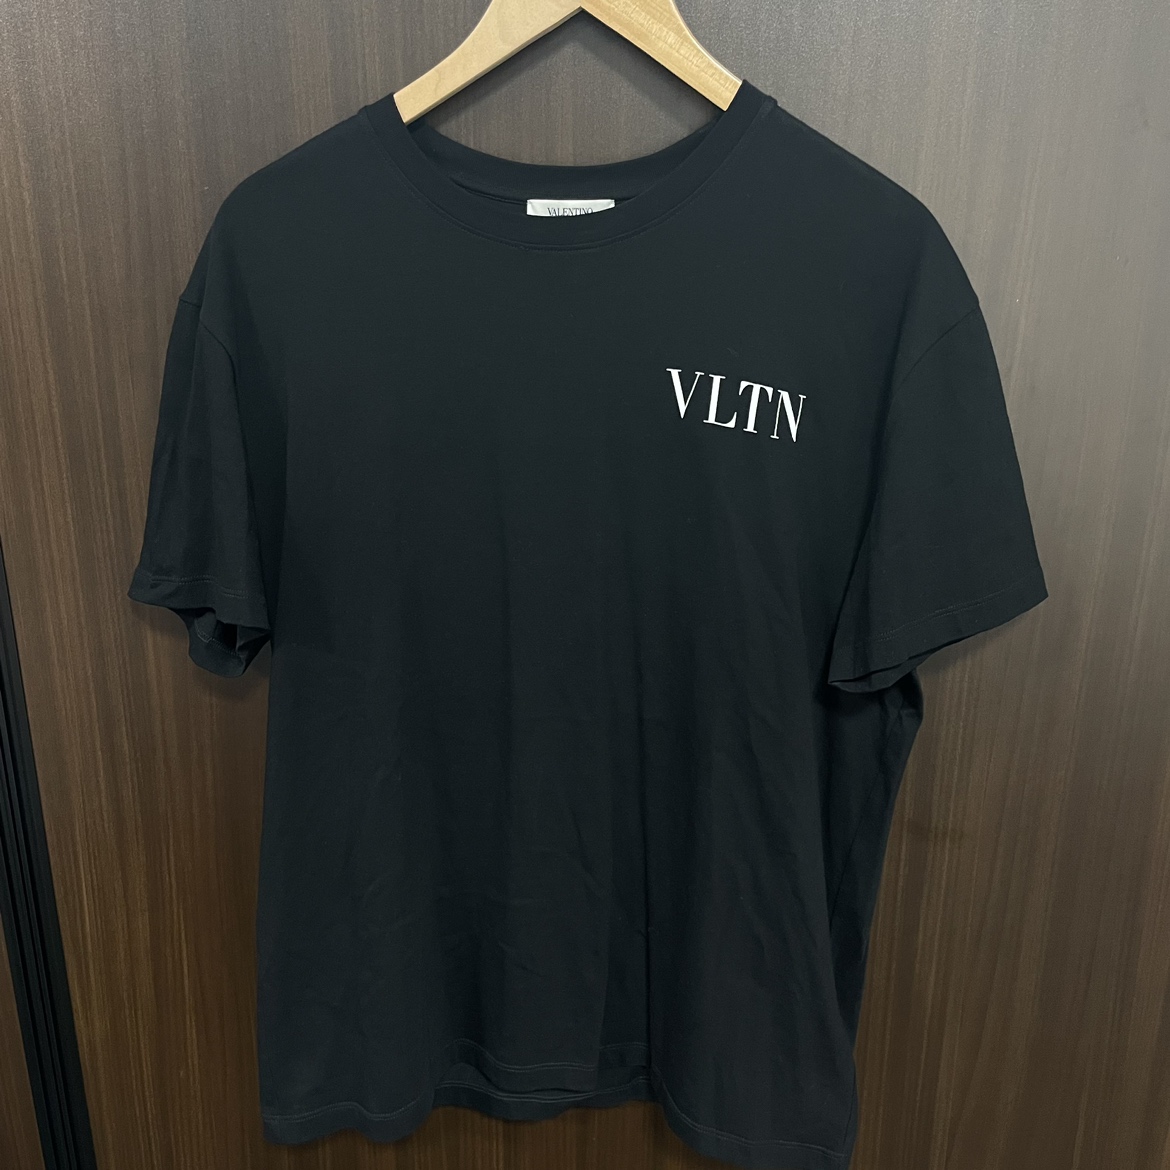 ヴァレンティノのブラック ロゴTシャツ VV3MG10V72Hの買取実績です。